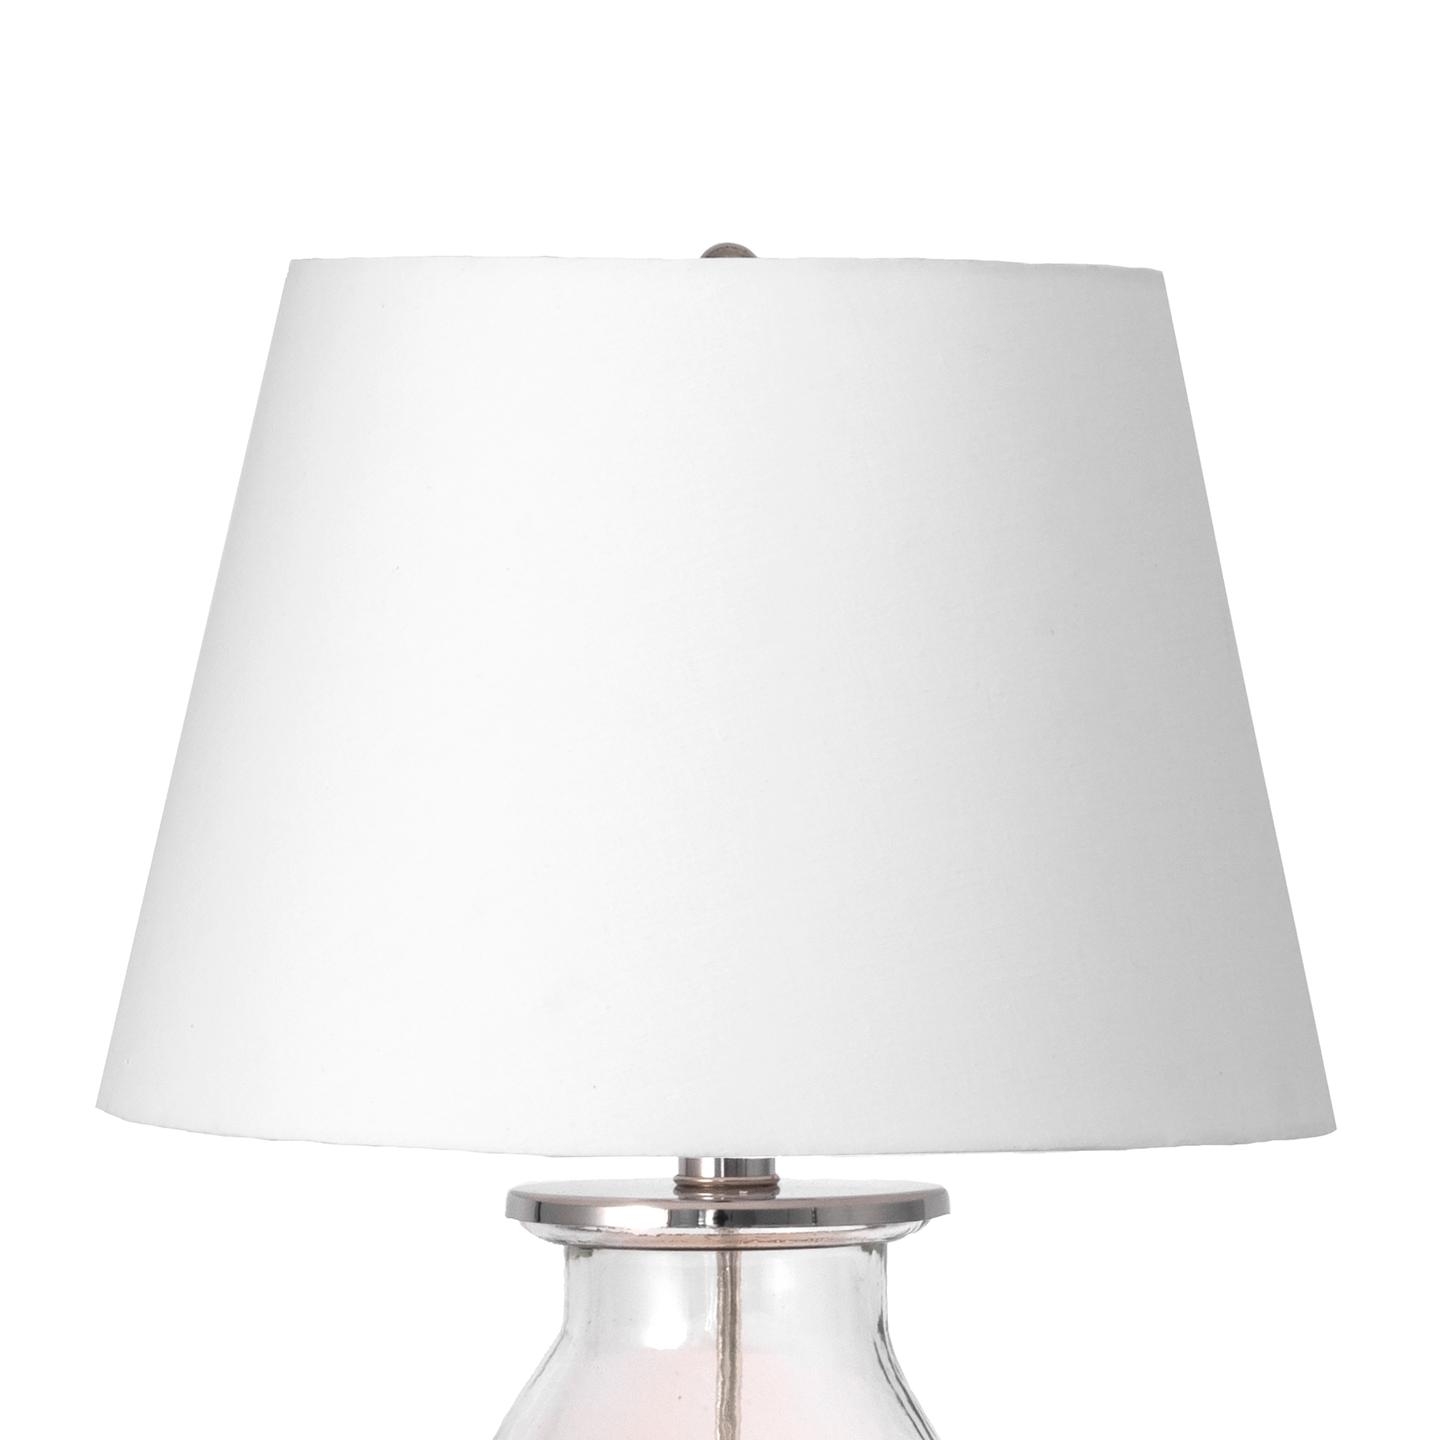 Crossett 22" Glass Table Lamp - Image 4